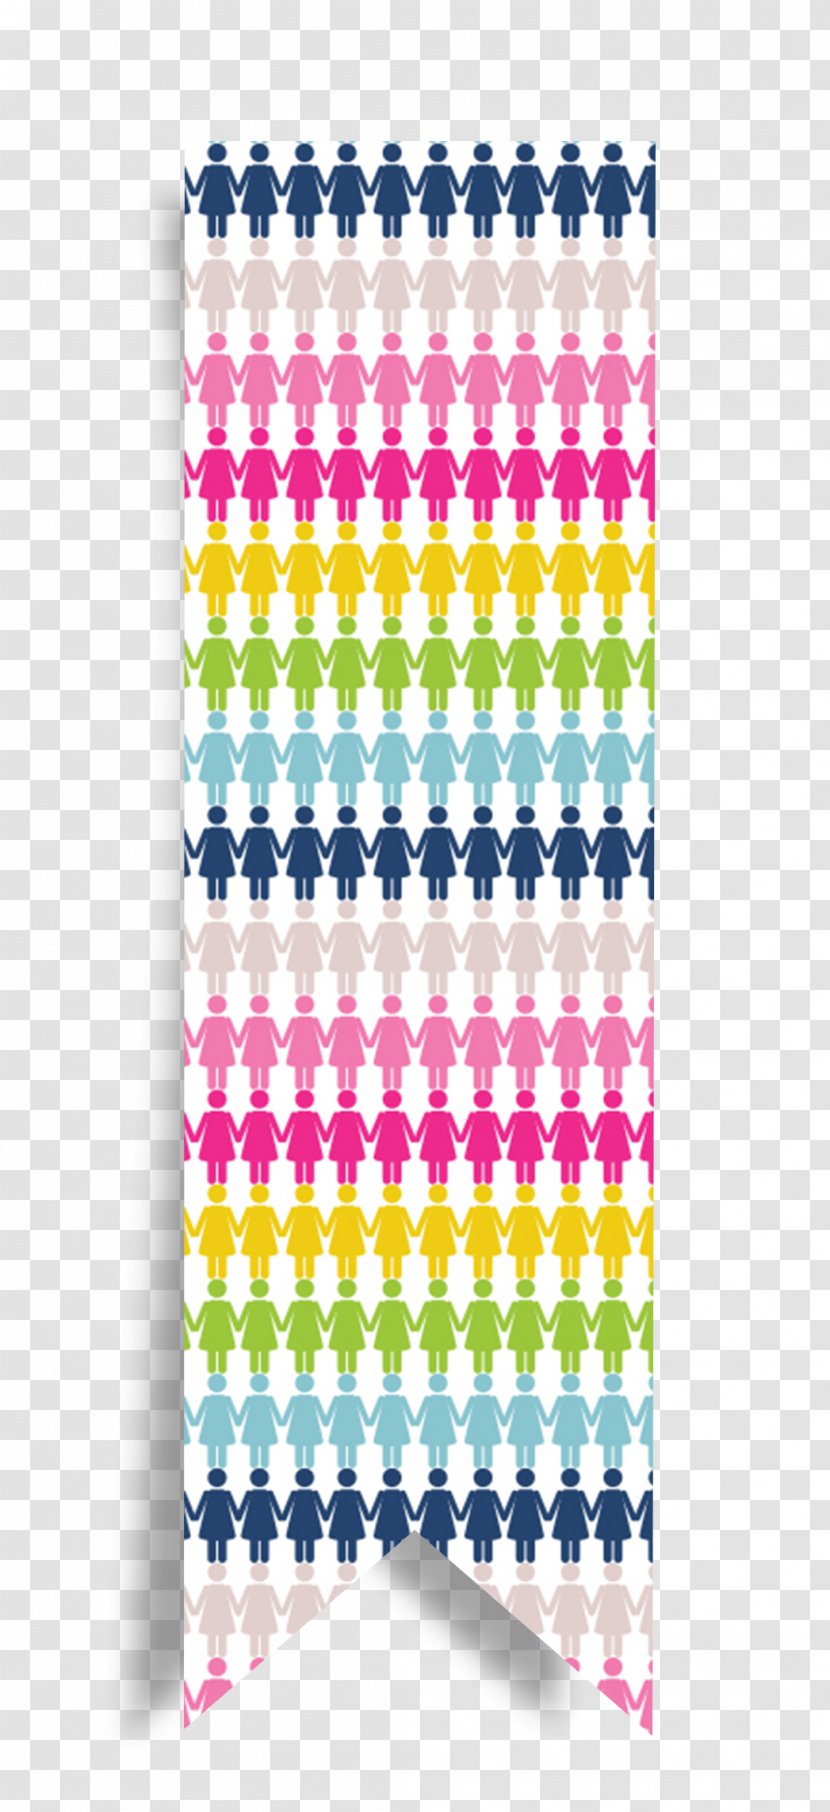 Scotland Textile Tartan Obra Social Pattern - Color - People Of Flag Transparent PNG